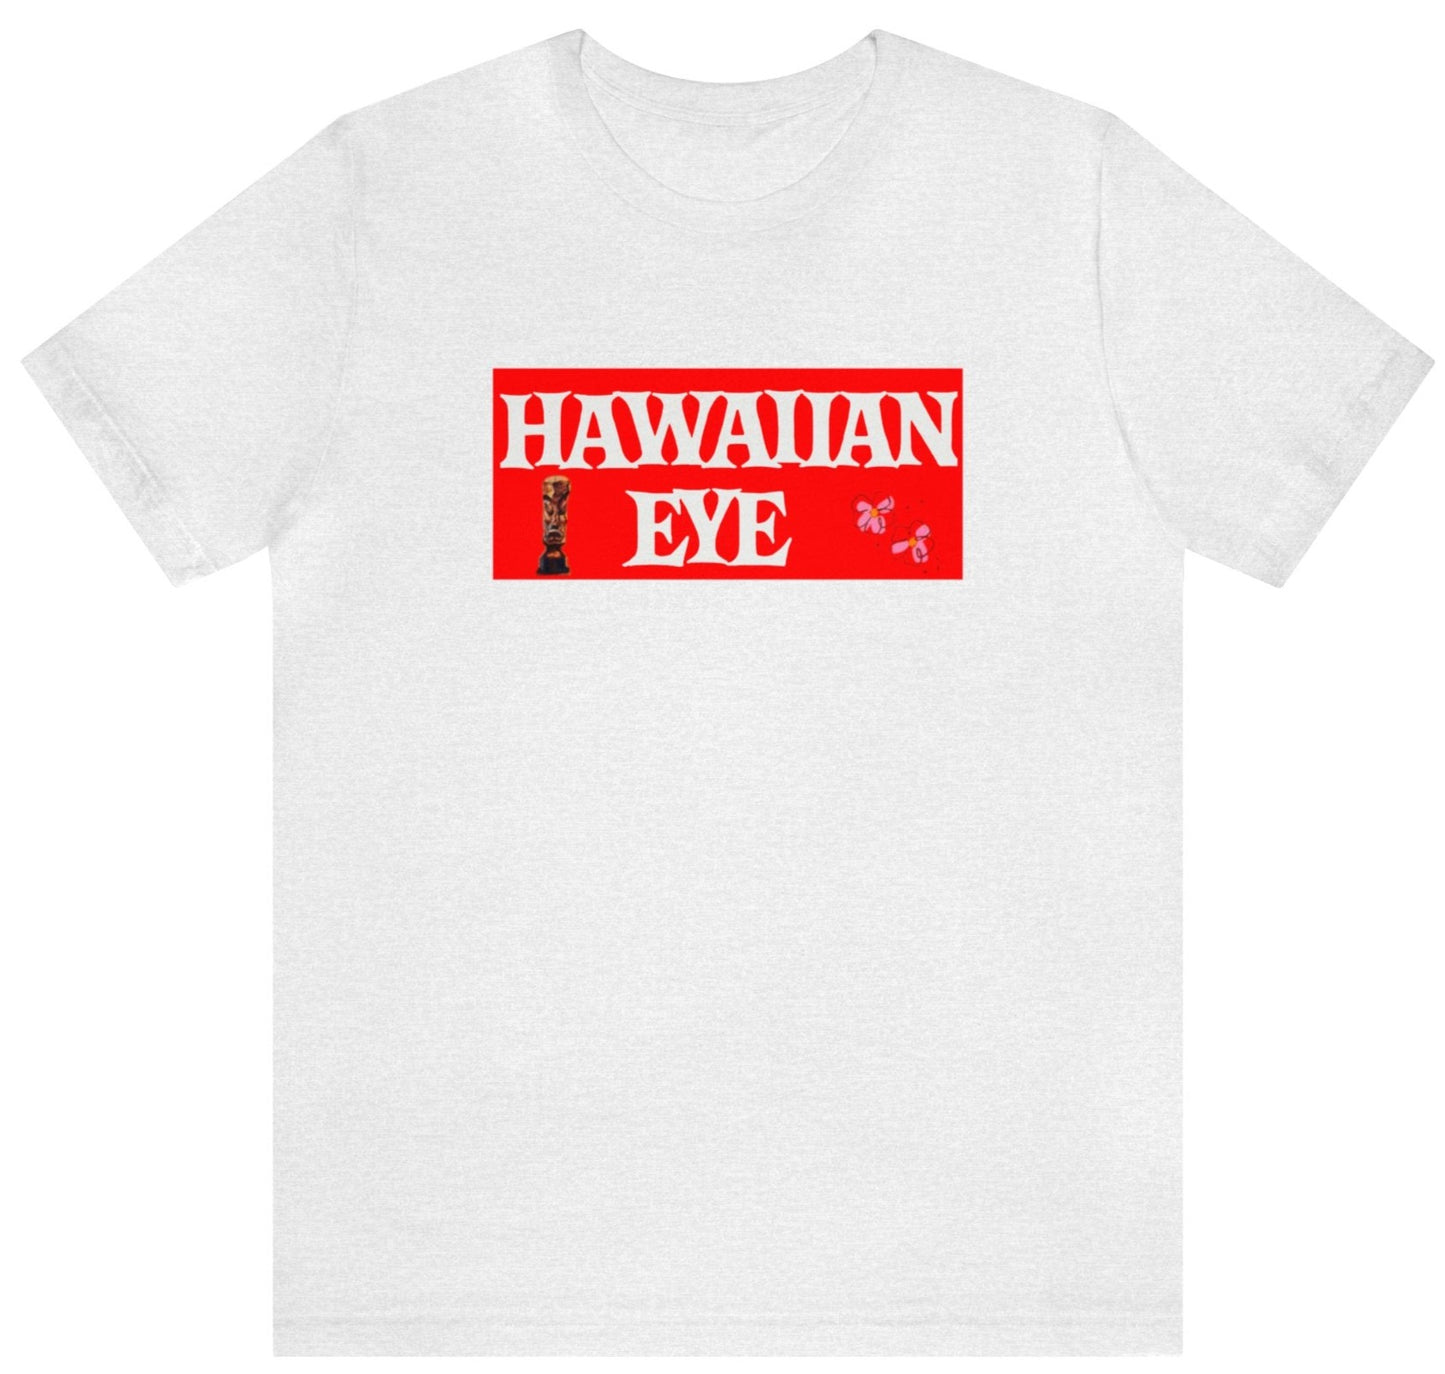 Hawaiian eye t shirt